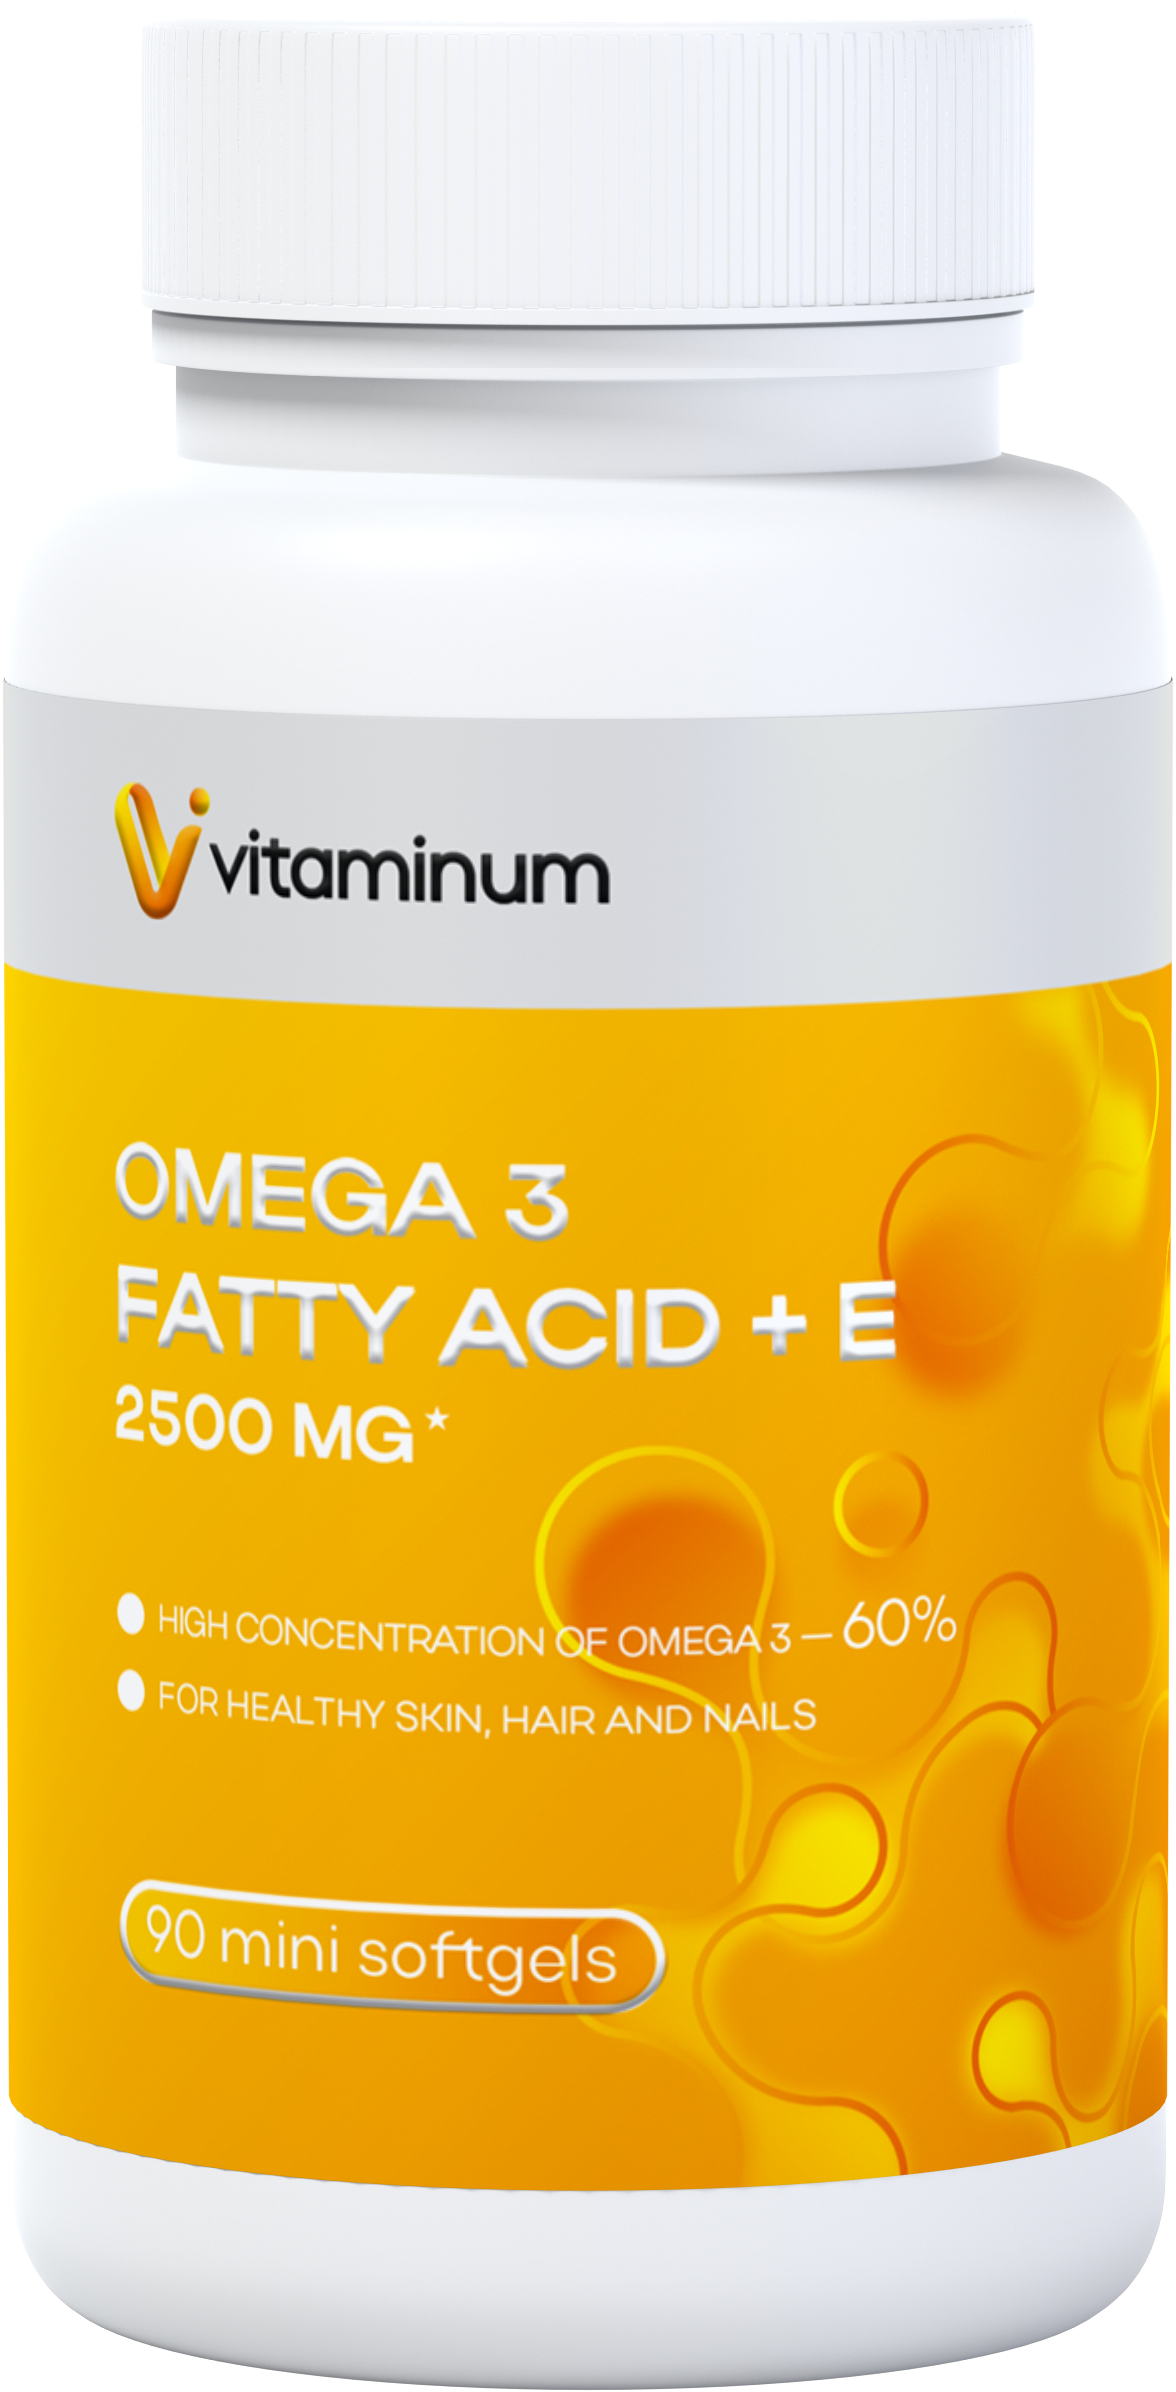  Vitaminum ОМЕГА 3 60% + витамин Е (2500 MG*) 90 капсул 700 мг   в Владимире